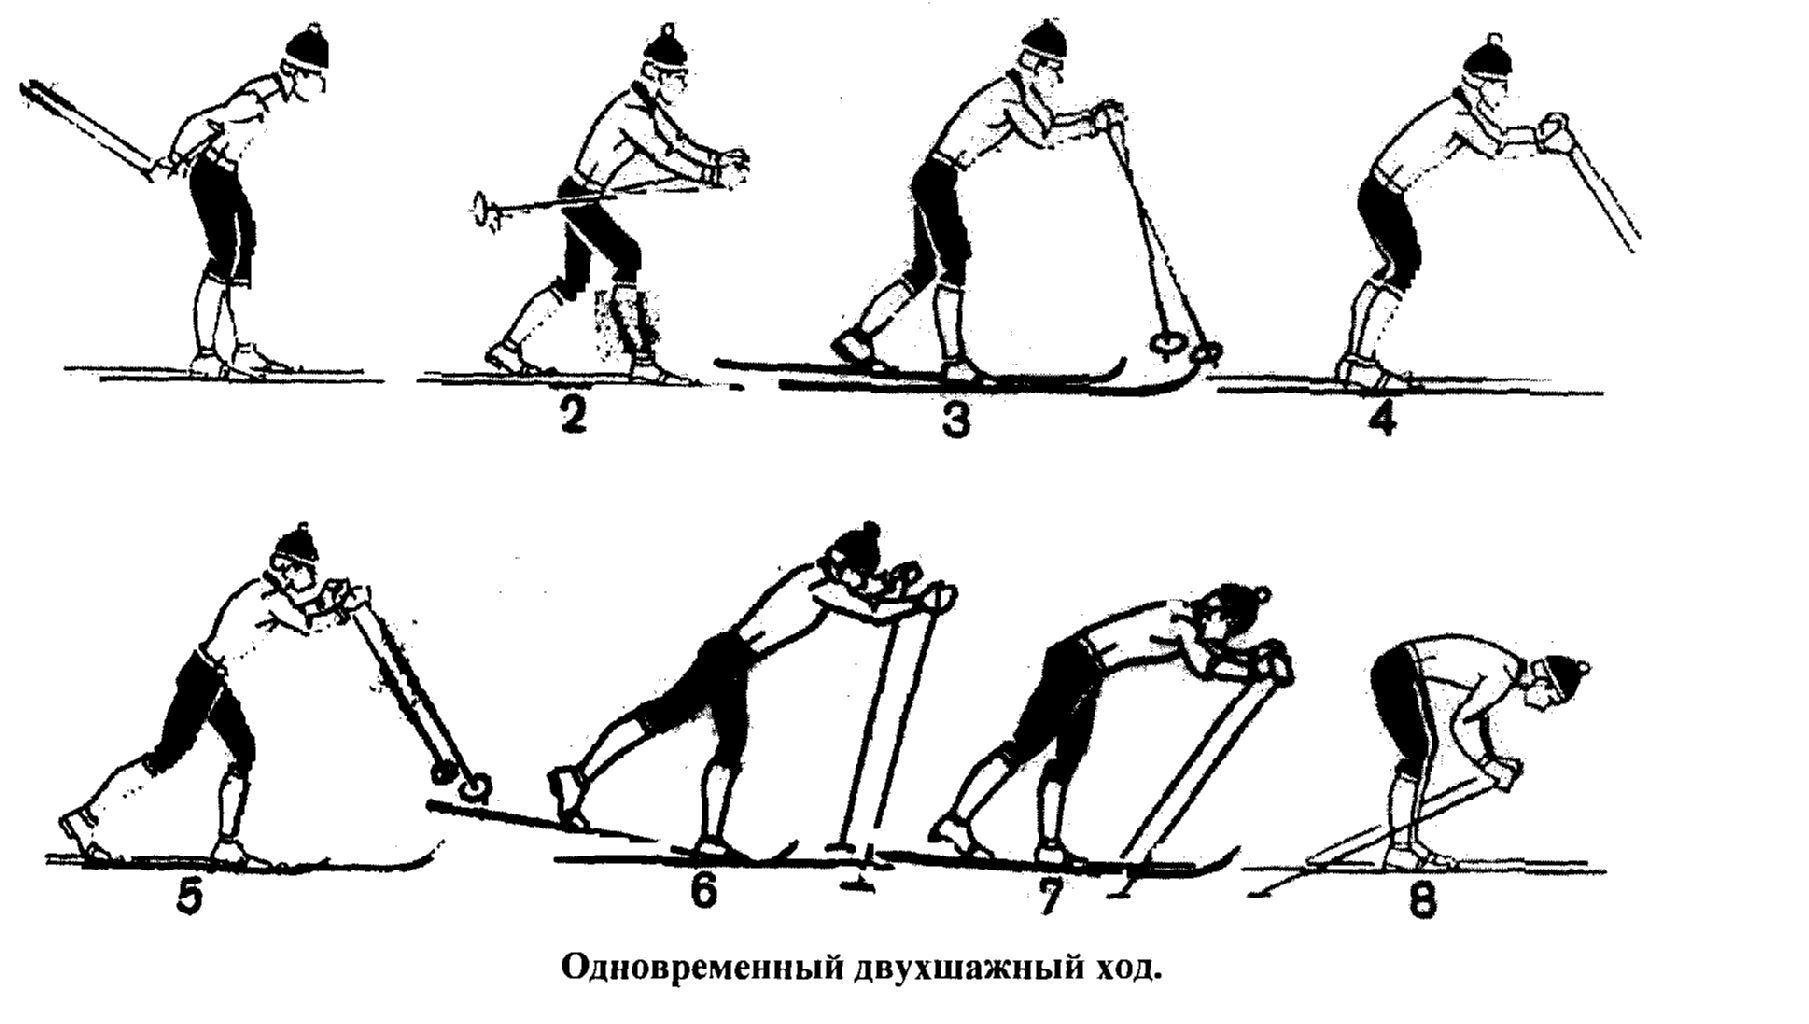 Цикл двухшажного хода. Одновременный двухшажный ход. Одновременно двухшажный ход на лыжах. Одновременный двухшажный ход на лыжах состоит. Одновременный двухшажный классический ход на лыжах.